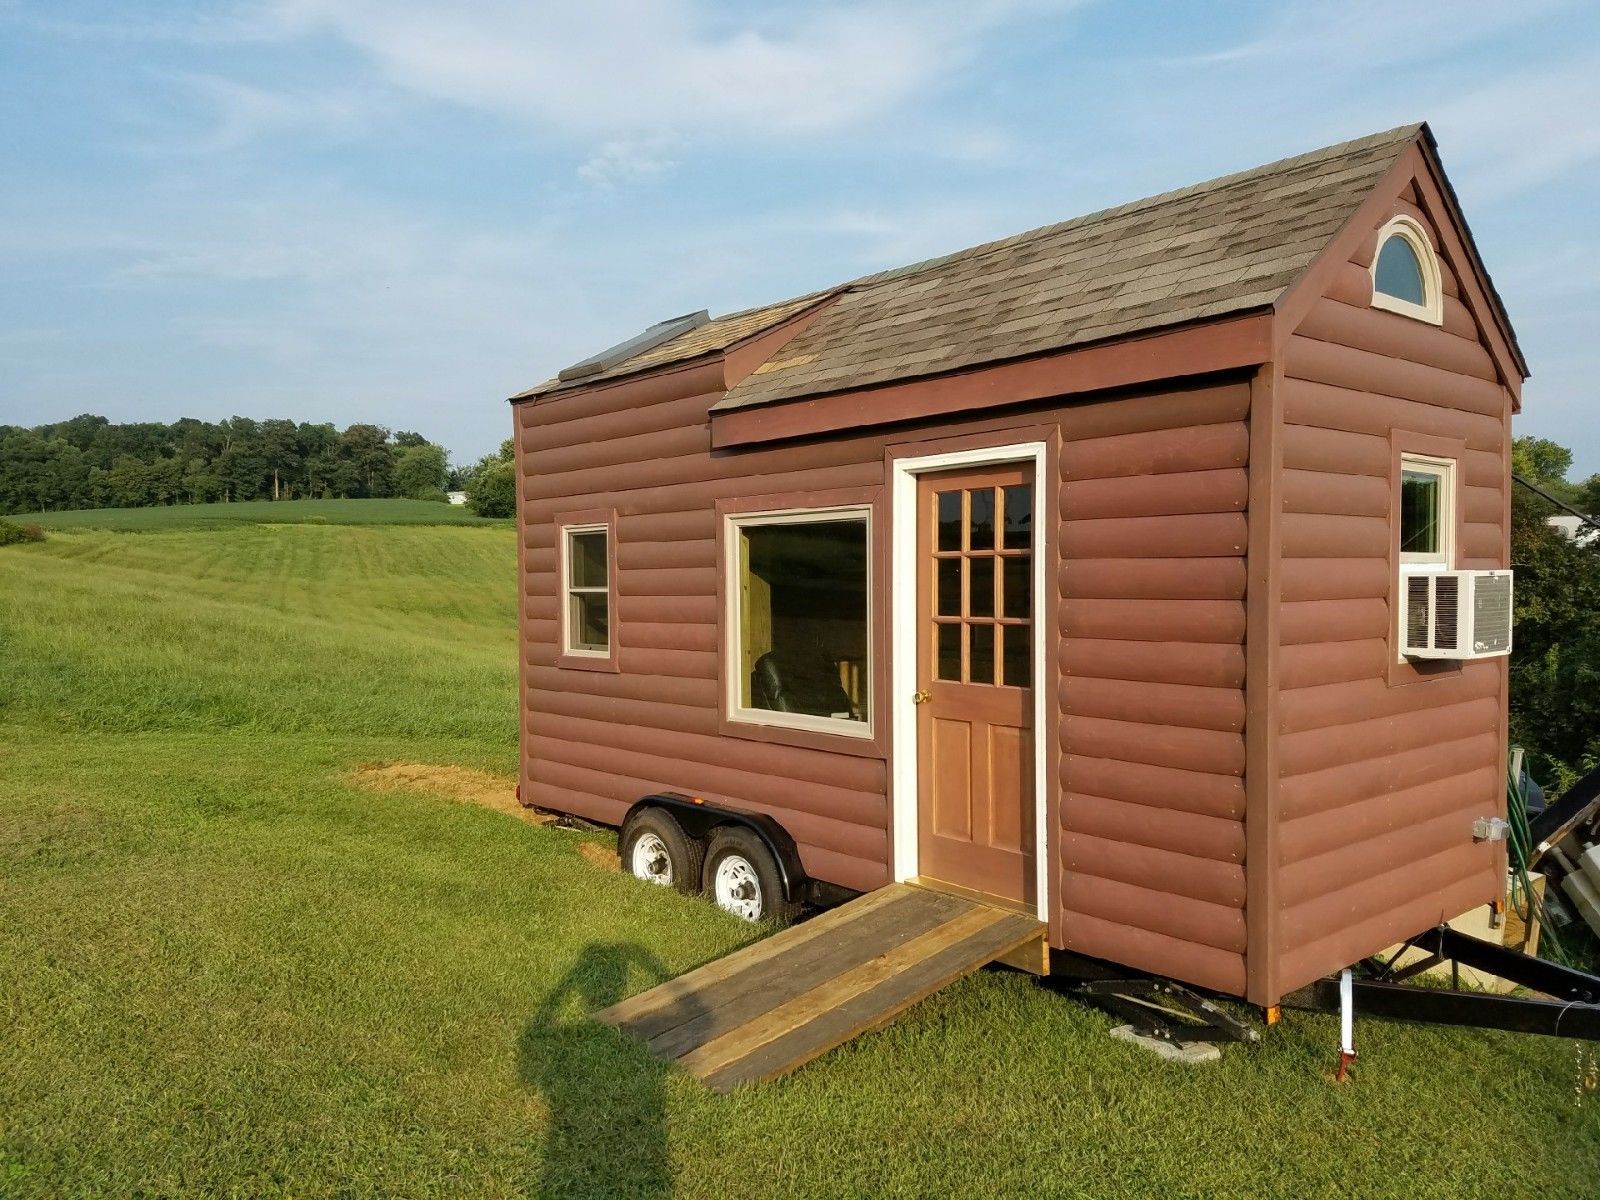 https://hips.hearstapps.com/hmg-prod/images/tiny-house-on-wheels-oak-interior-1515015902.jpg